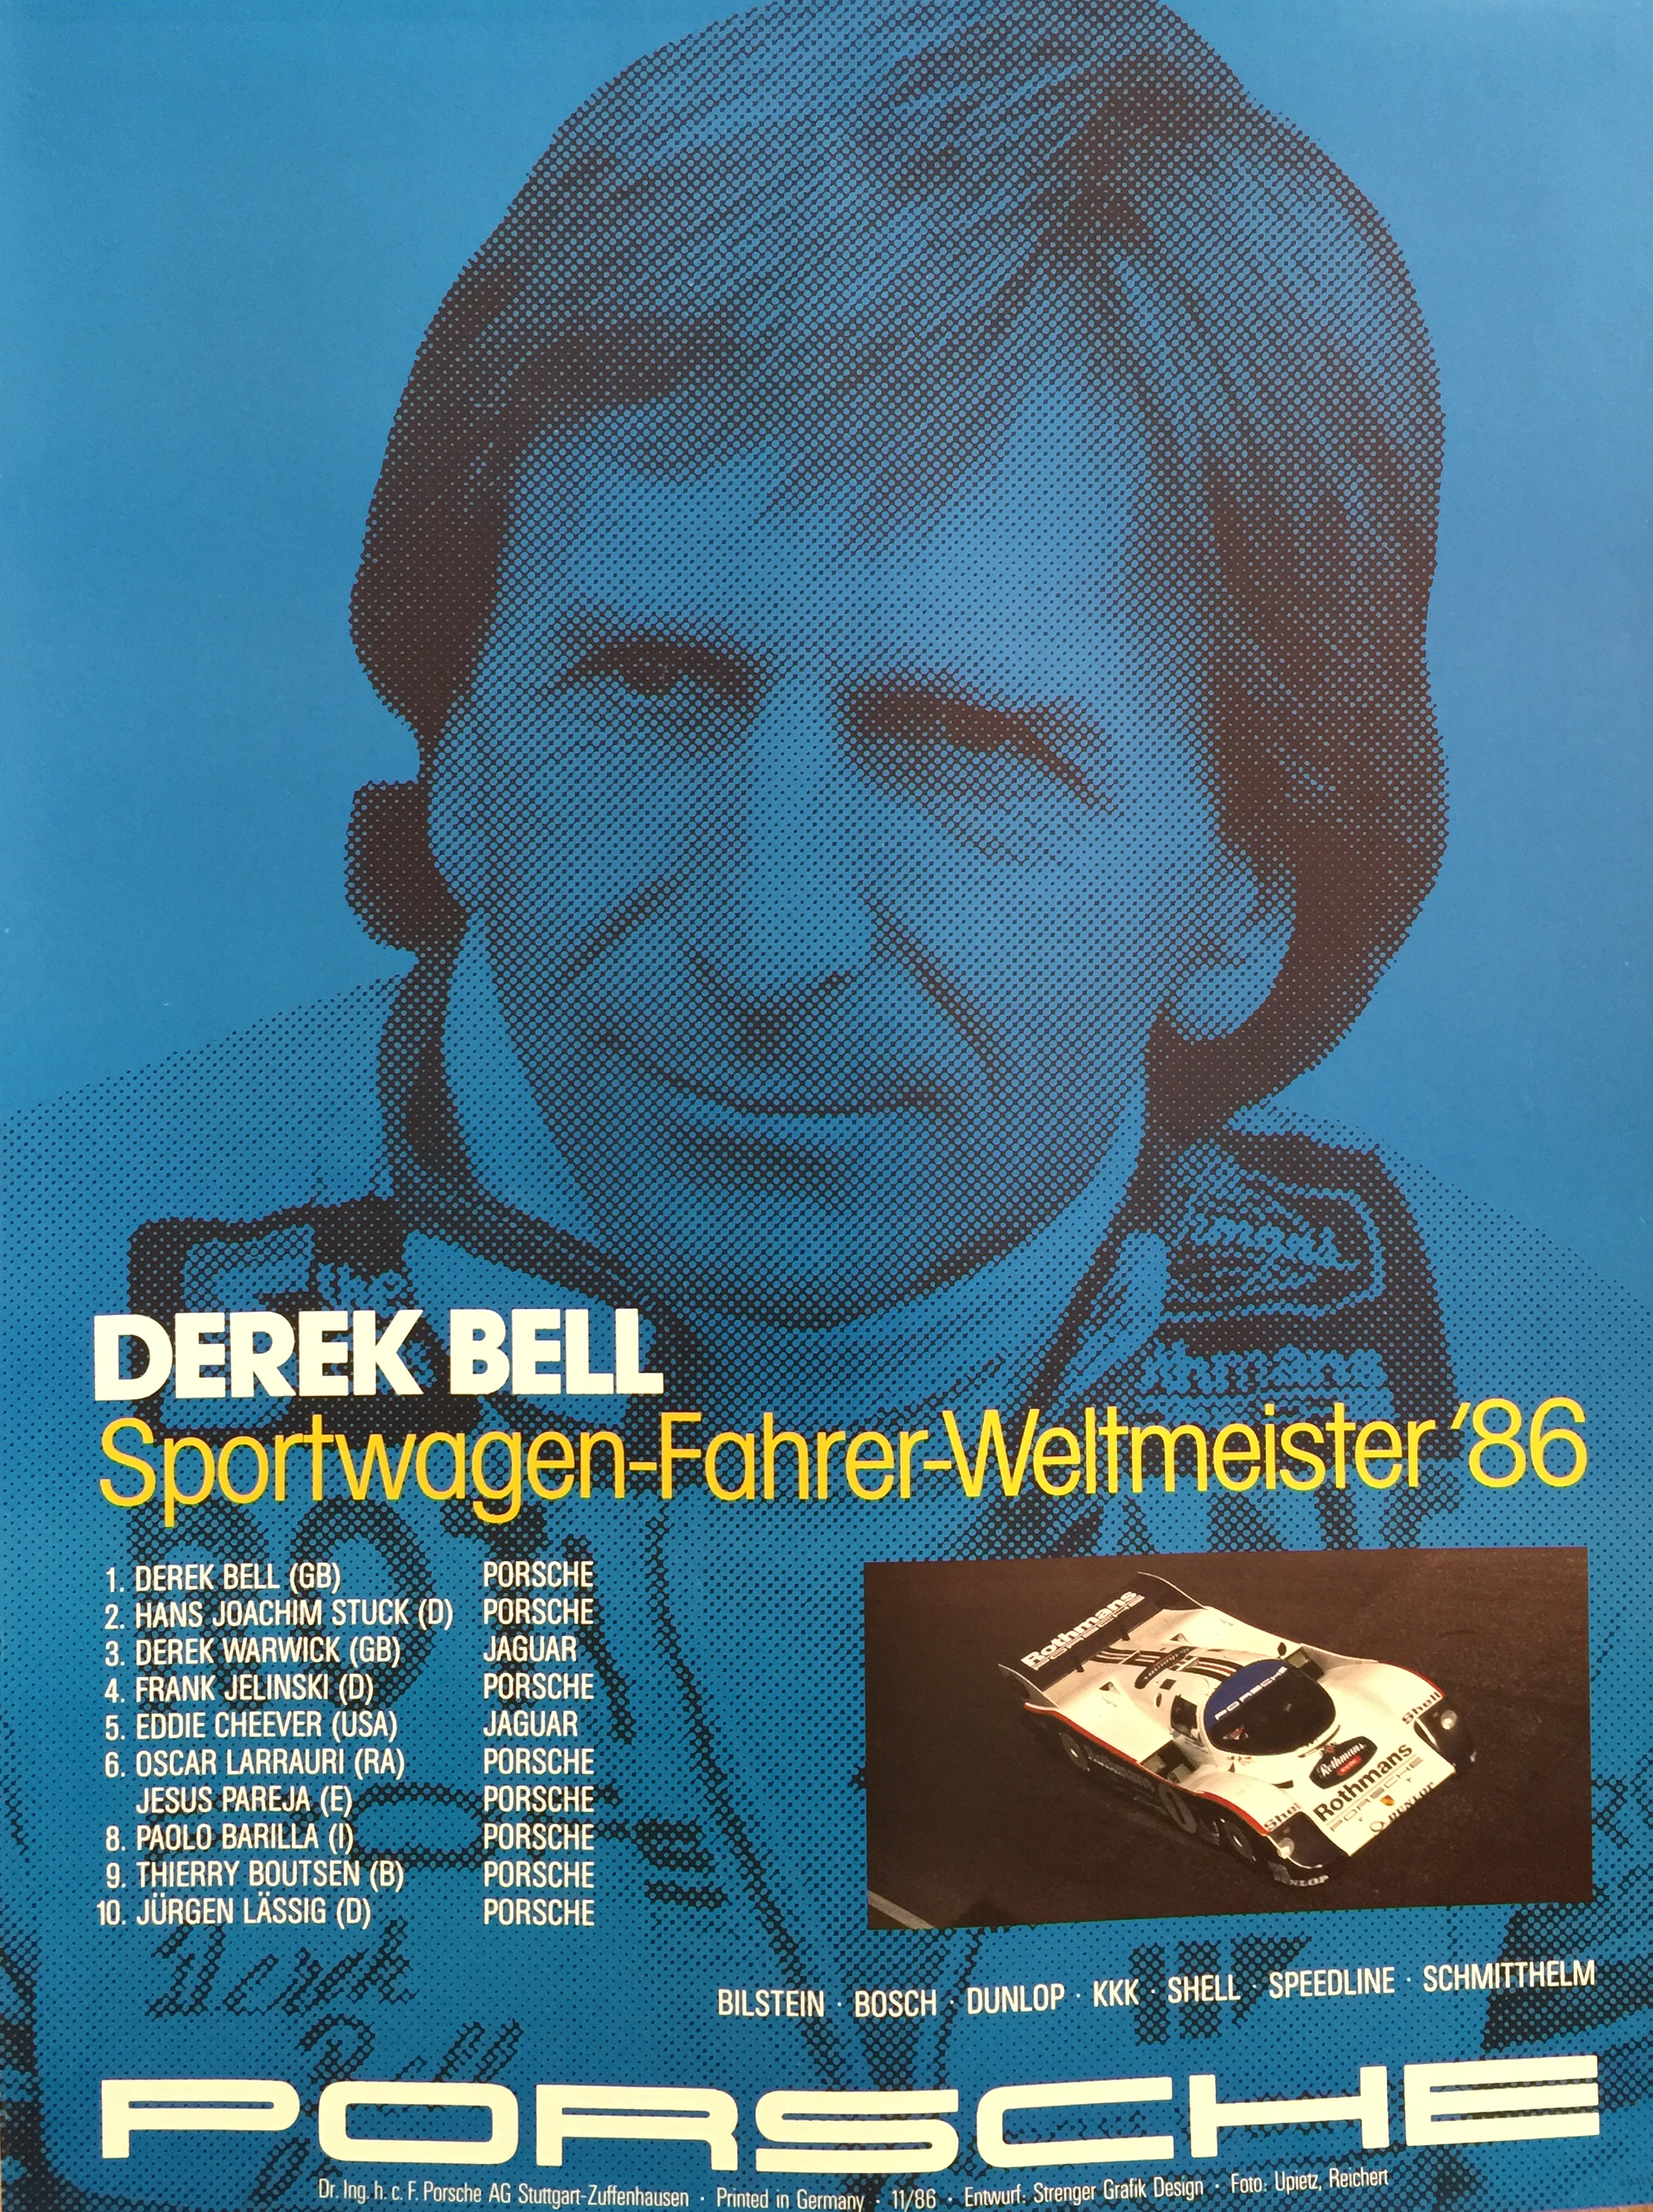 Derek Bell Sportwagen Porsche 1986 Original Vintage Poster